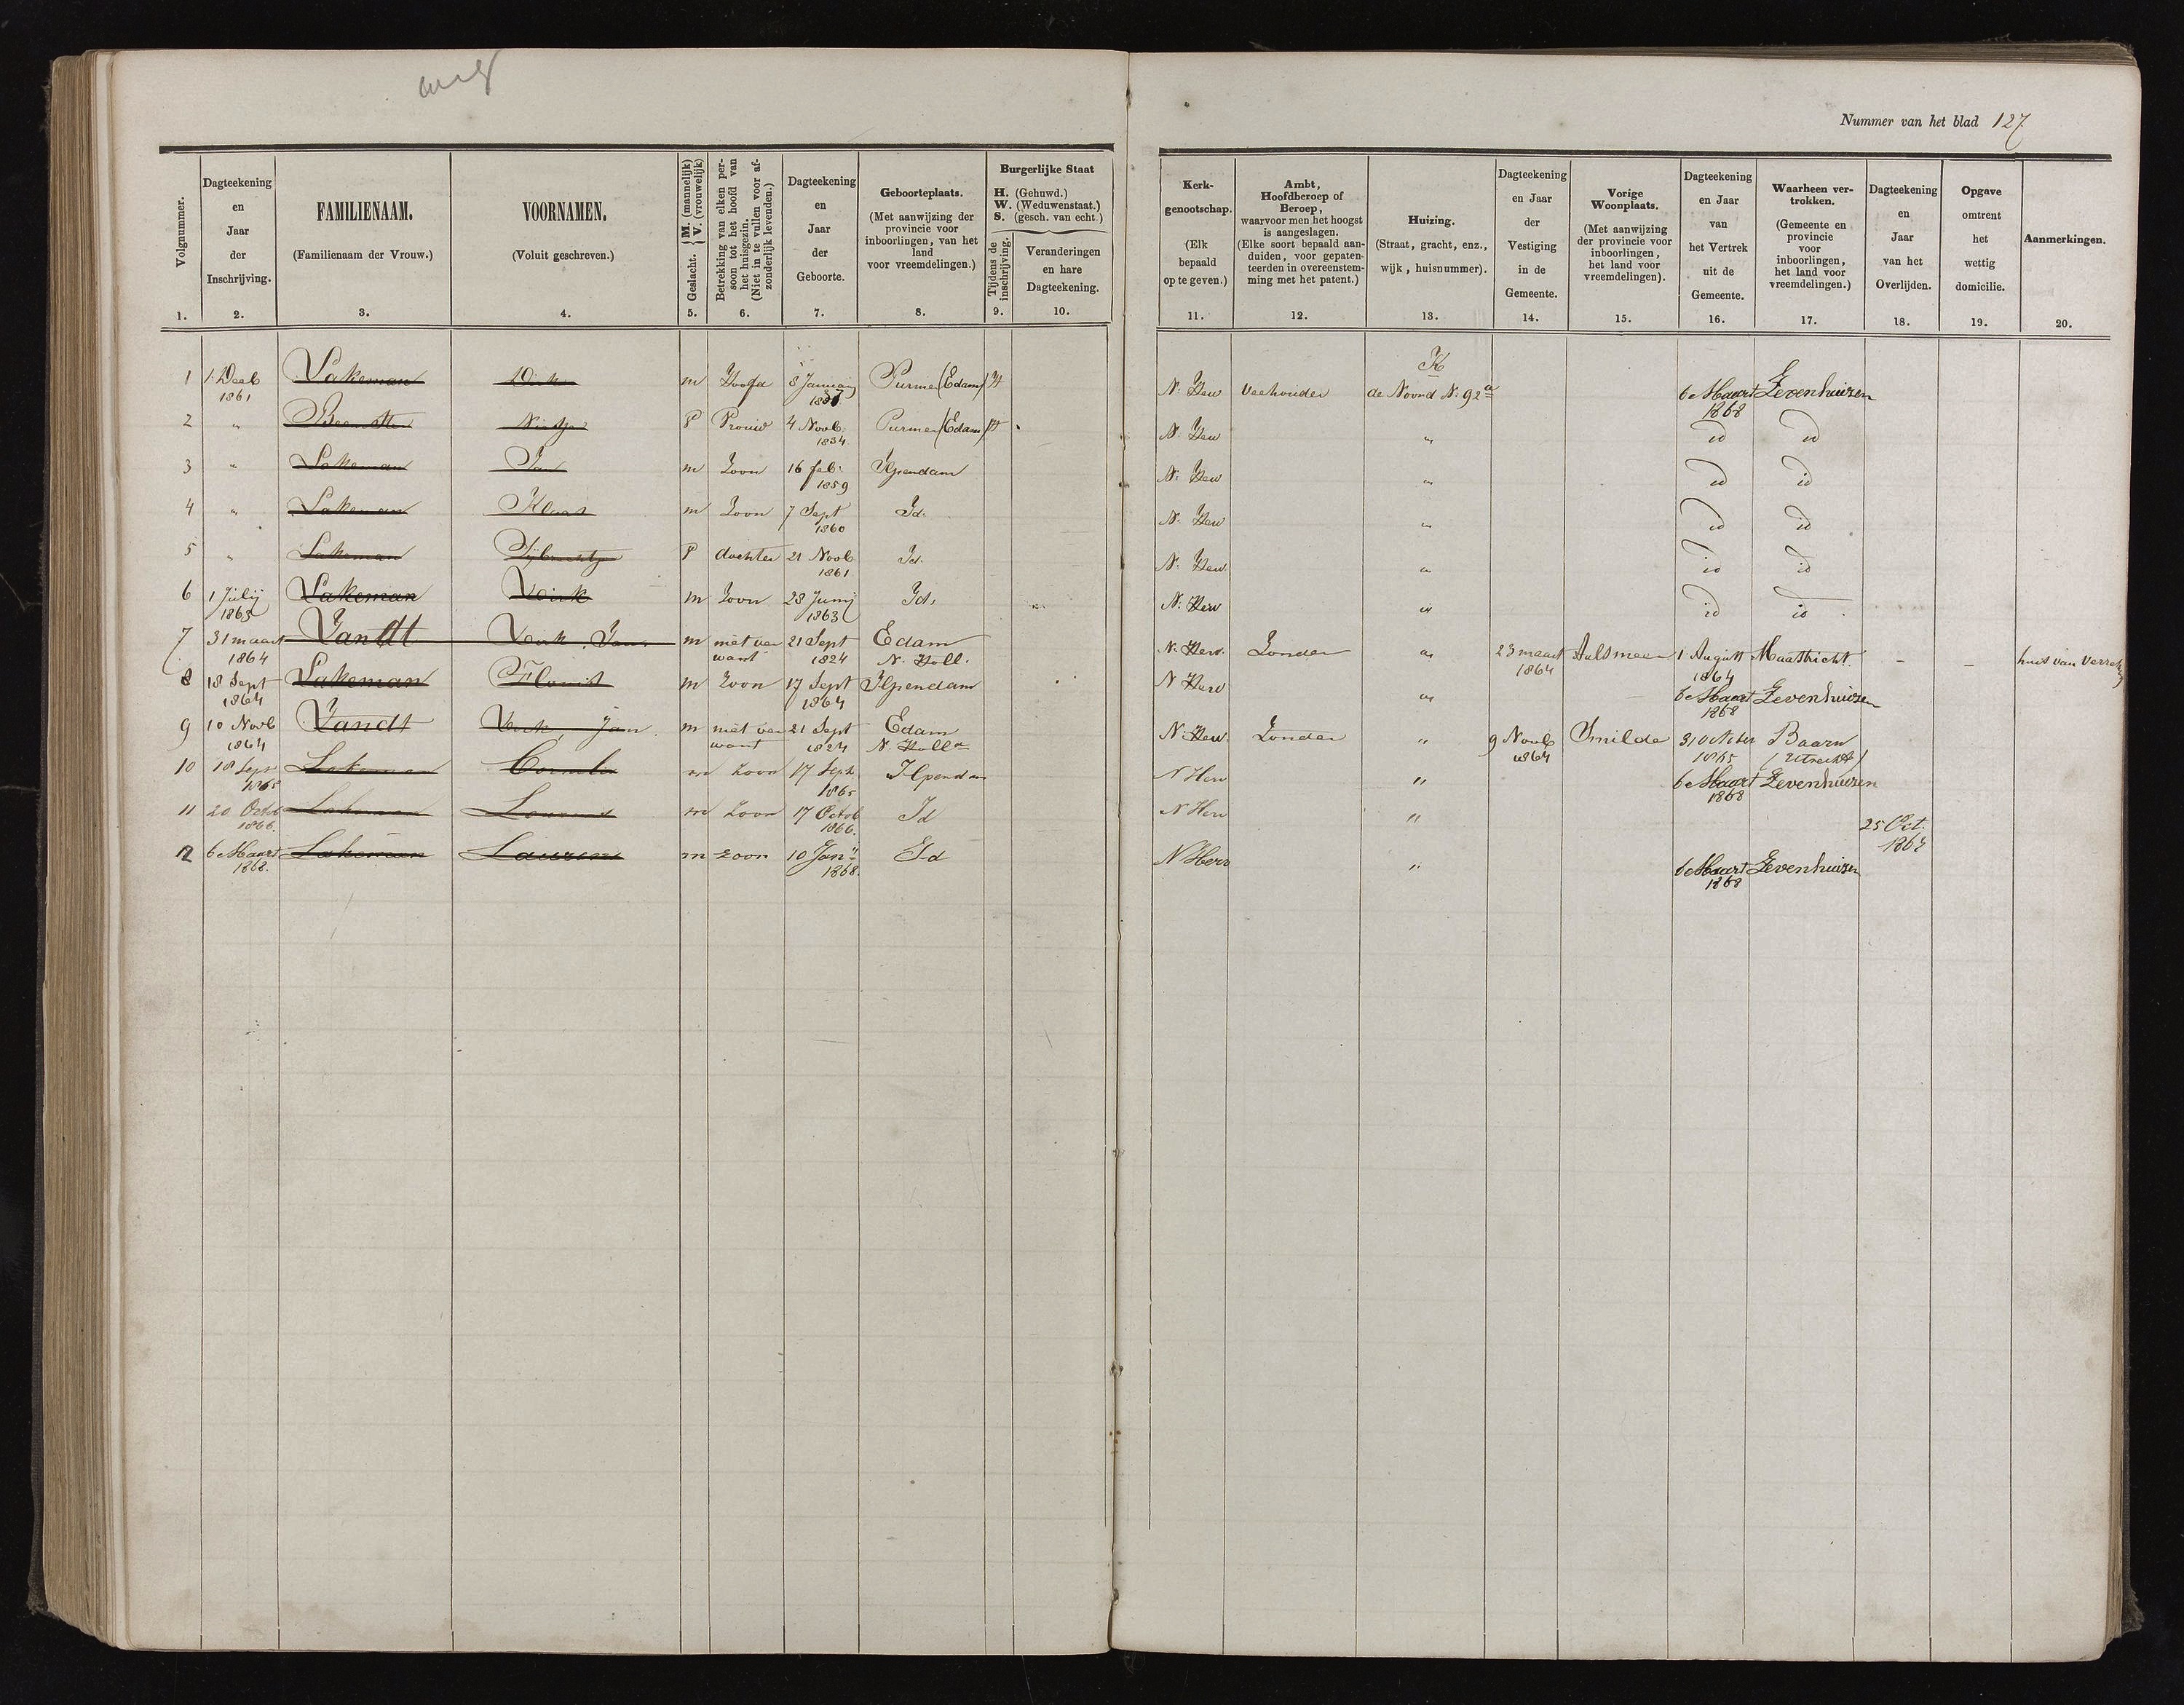 bevolkingsregister-_ilpendam__met_den_ilp_en_purmerland_-_bevolkingsregister_ilpendam_1861-1874__1_.jpg